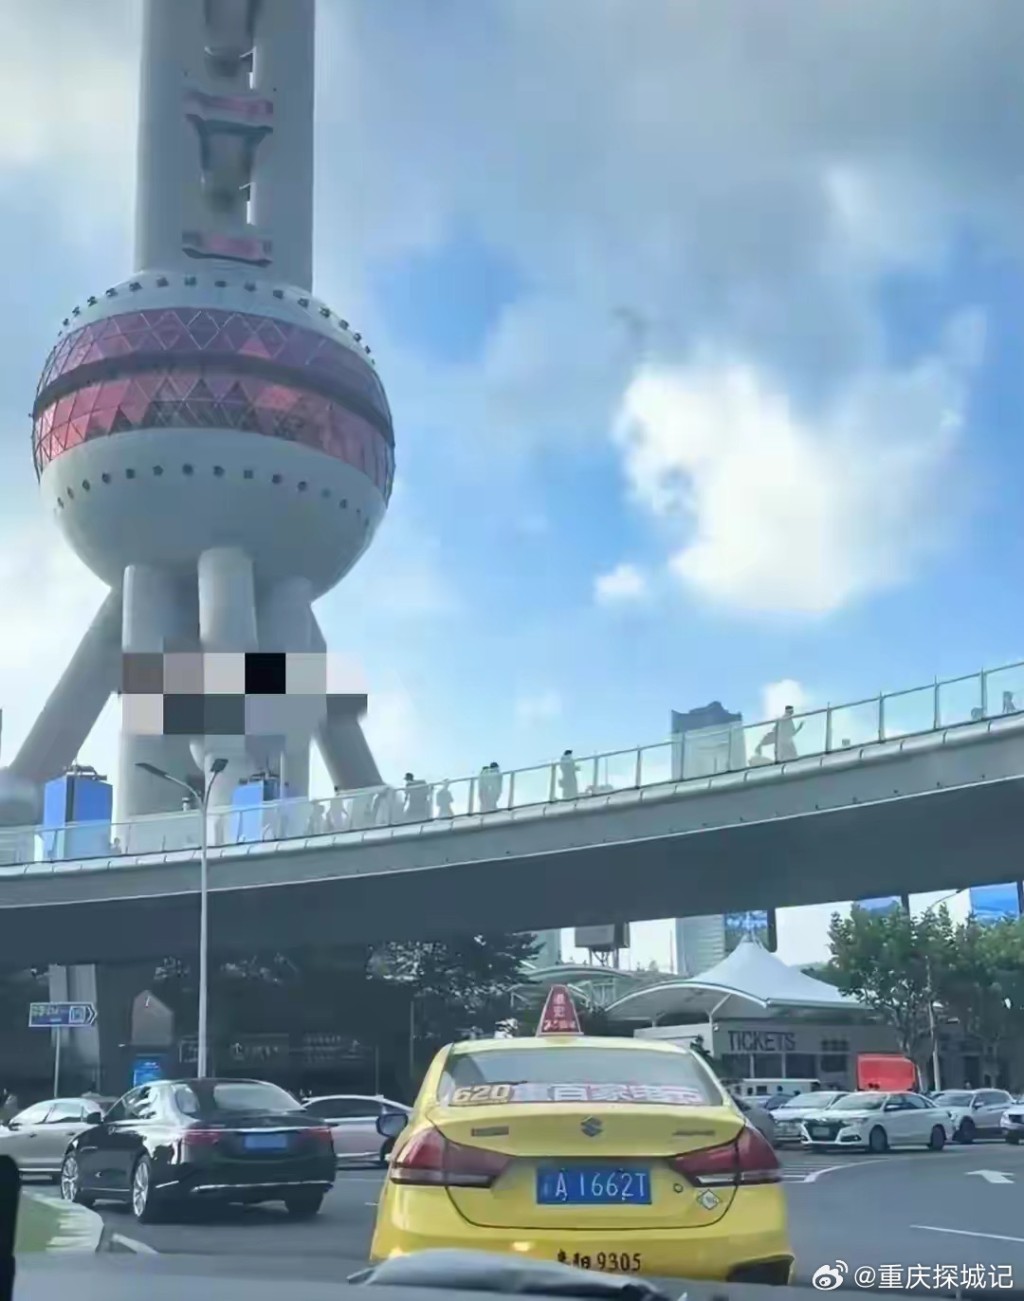 重庆的士出现上海街头，让网民惊讶。(微博)